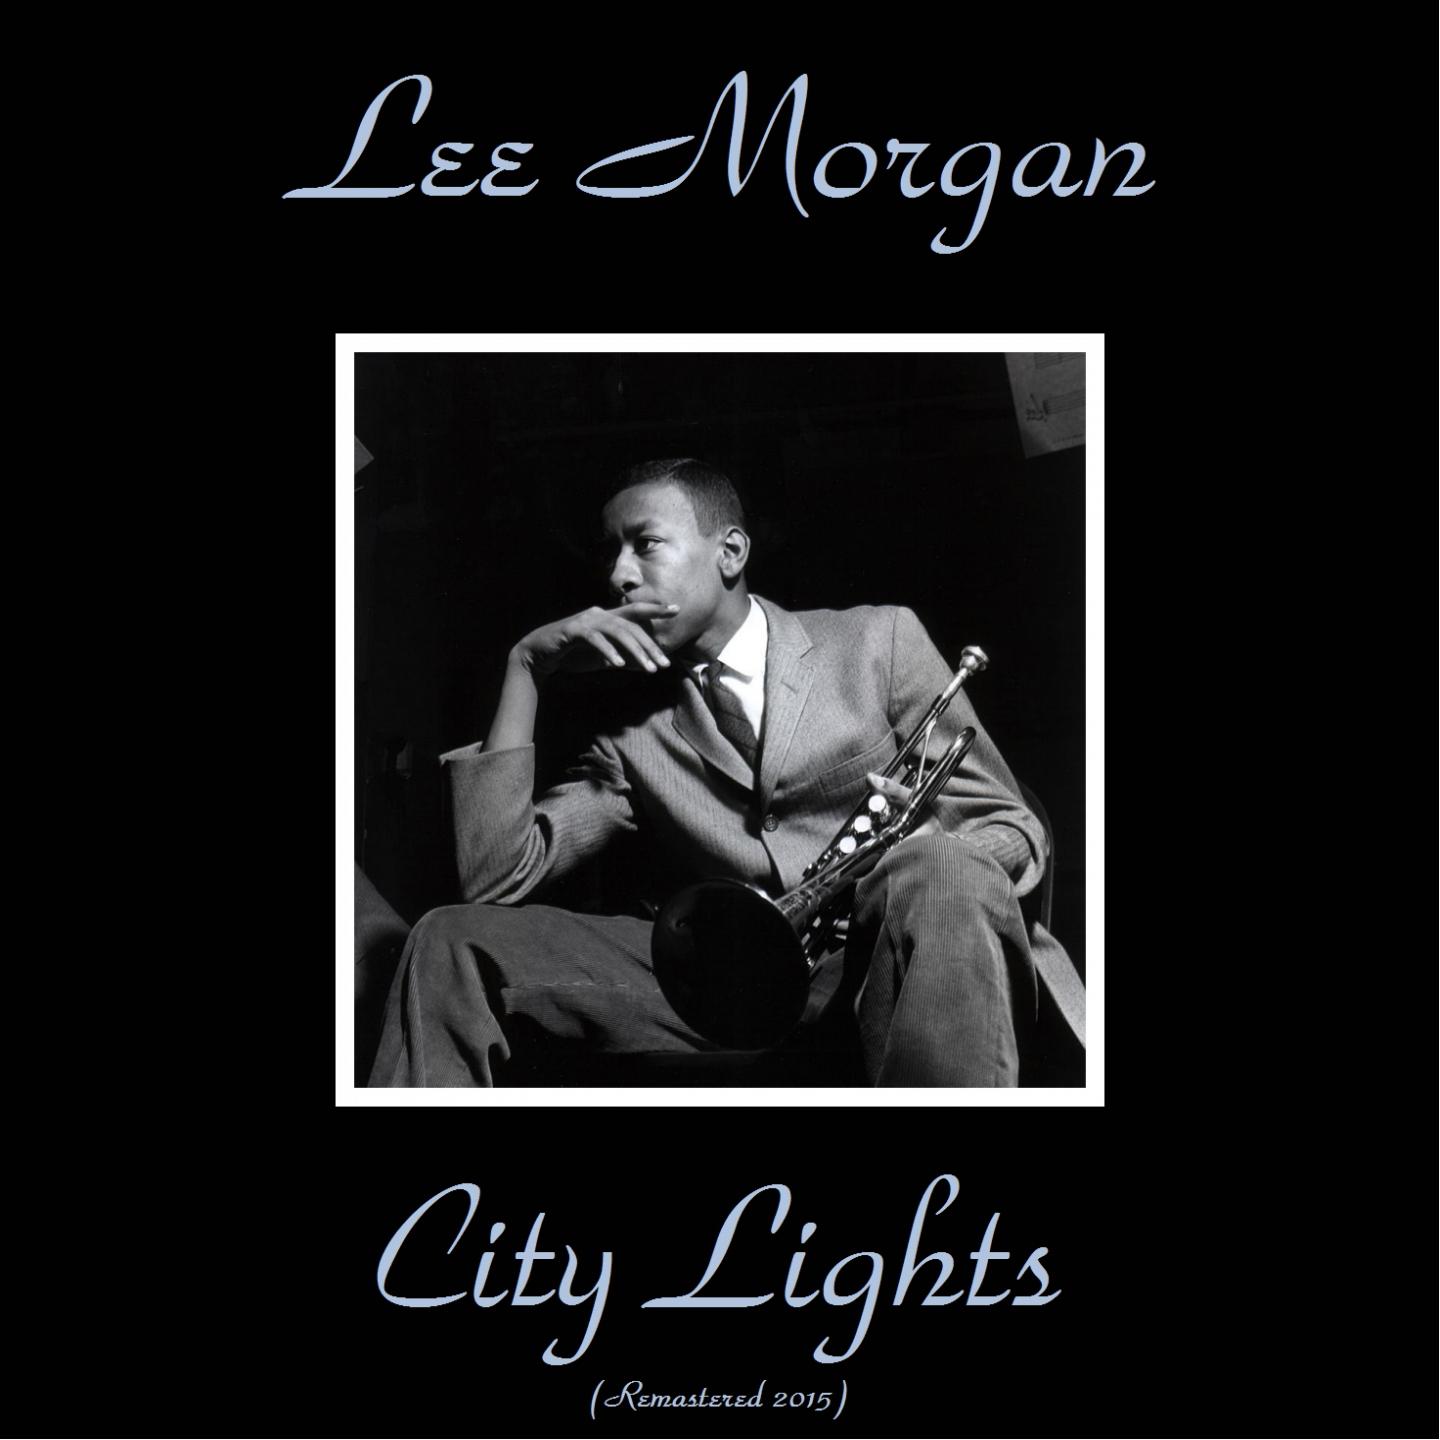 City Lights (Remastered 2015)